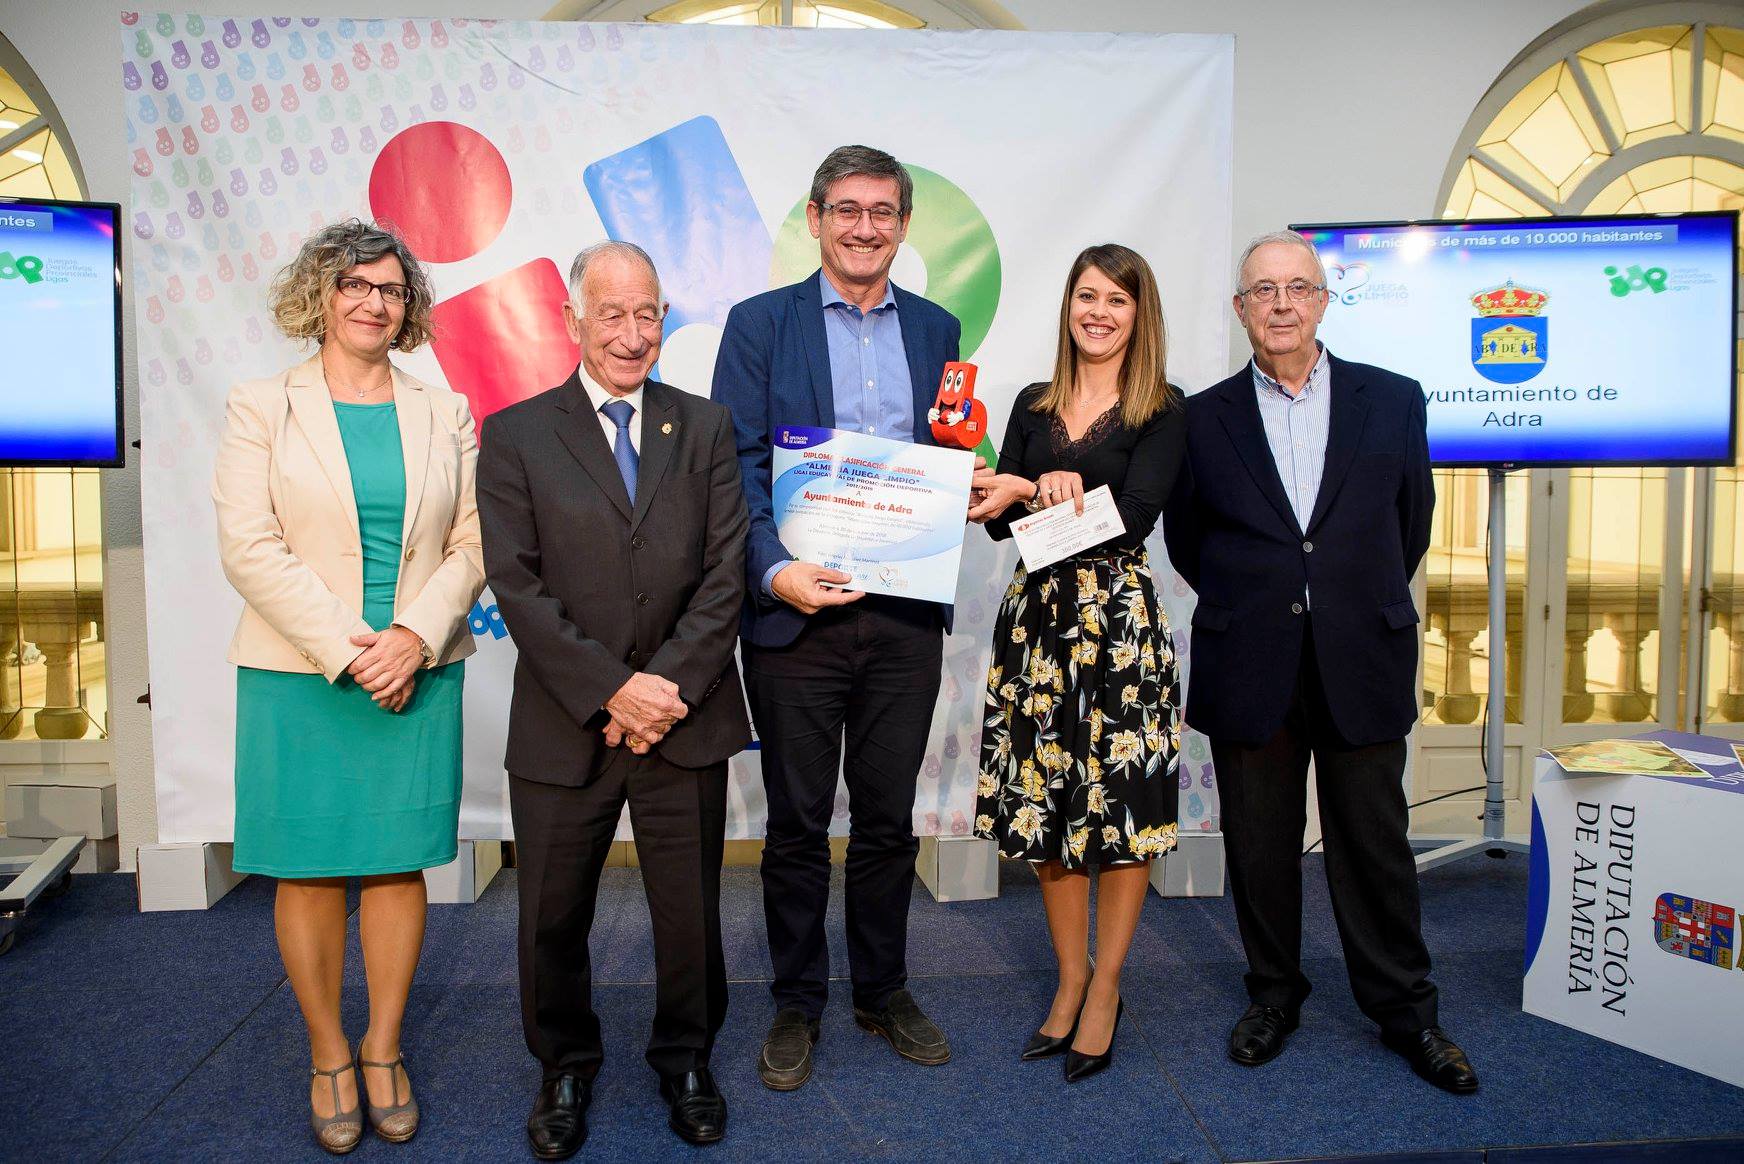 La Diputación de Almería reconoce el trabajo de fomento del deporte del Ayuntamiento de Adra